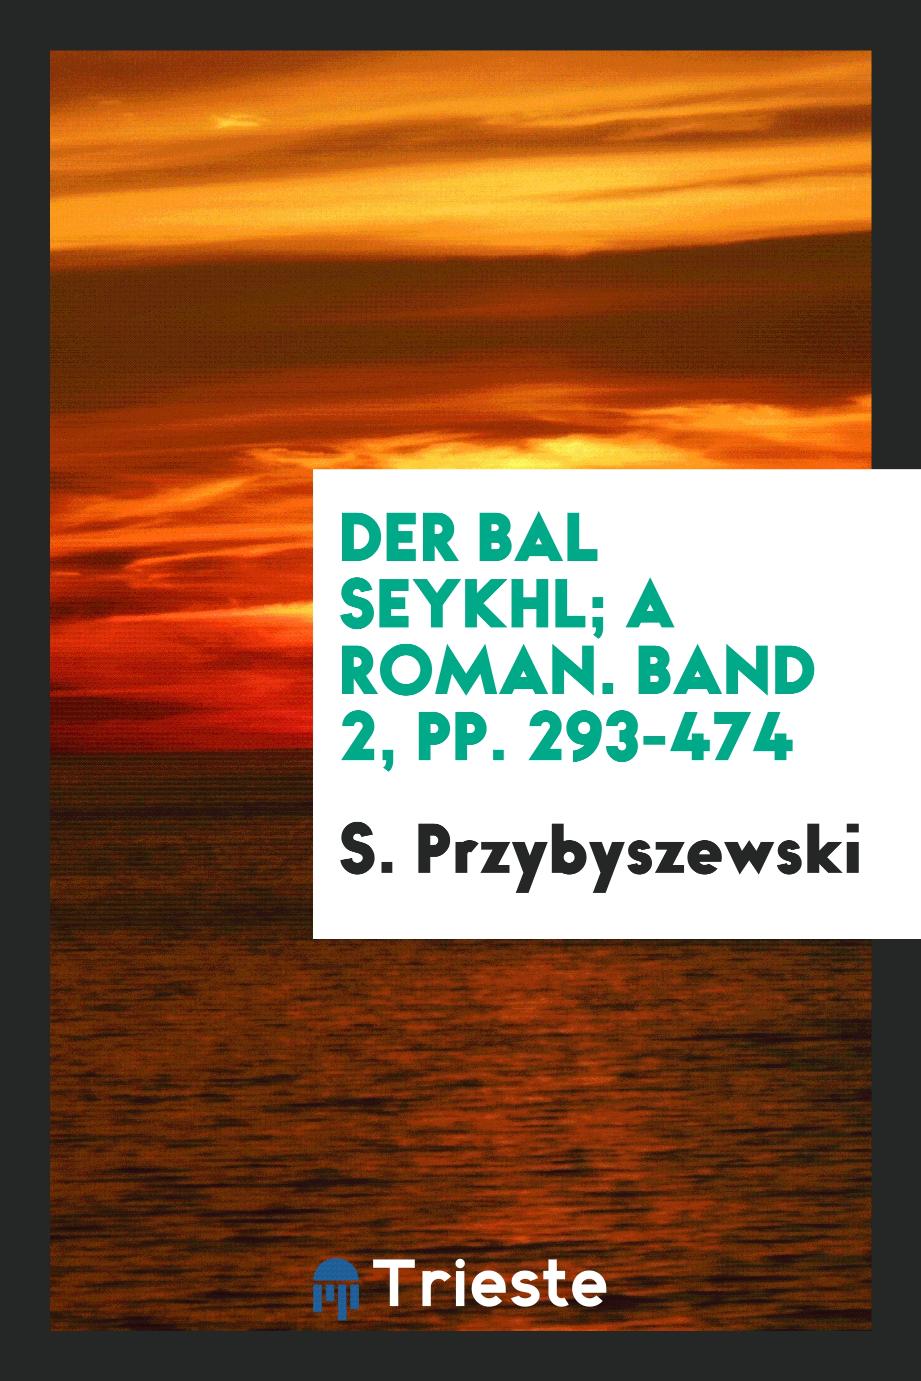 S. Przybyszewski - Der Bal Seykhl; A Roman. Band 2, pp. 293-474